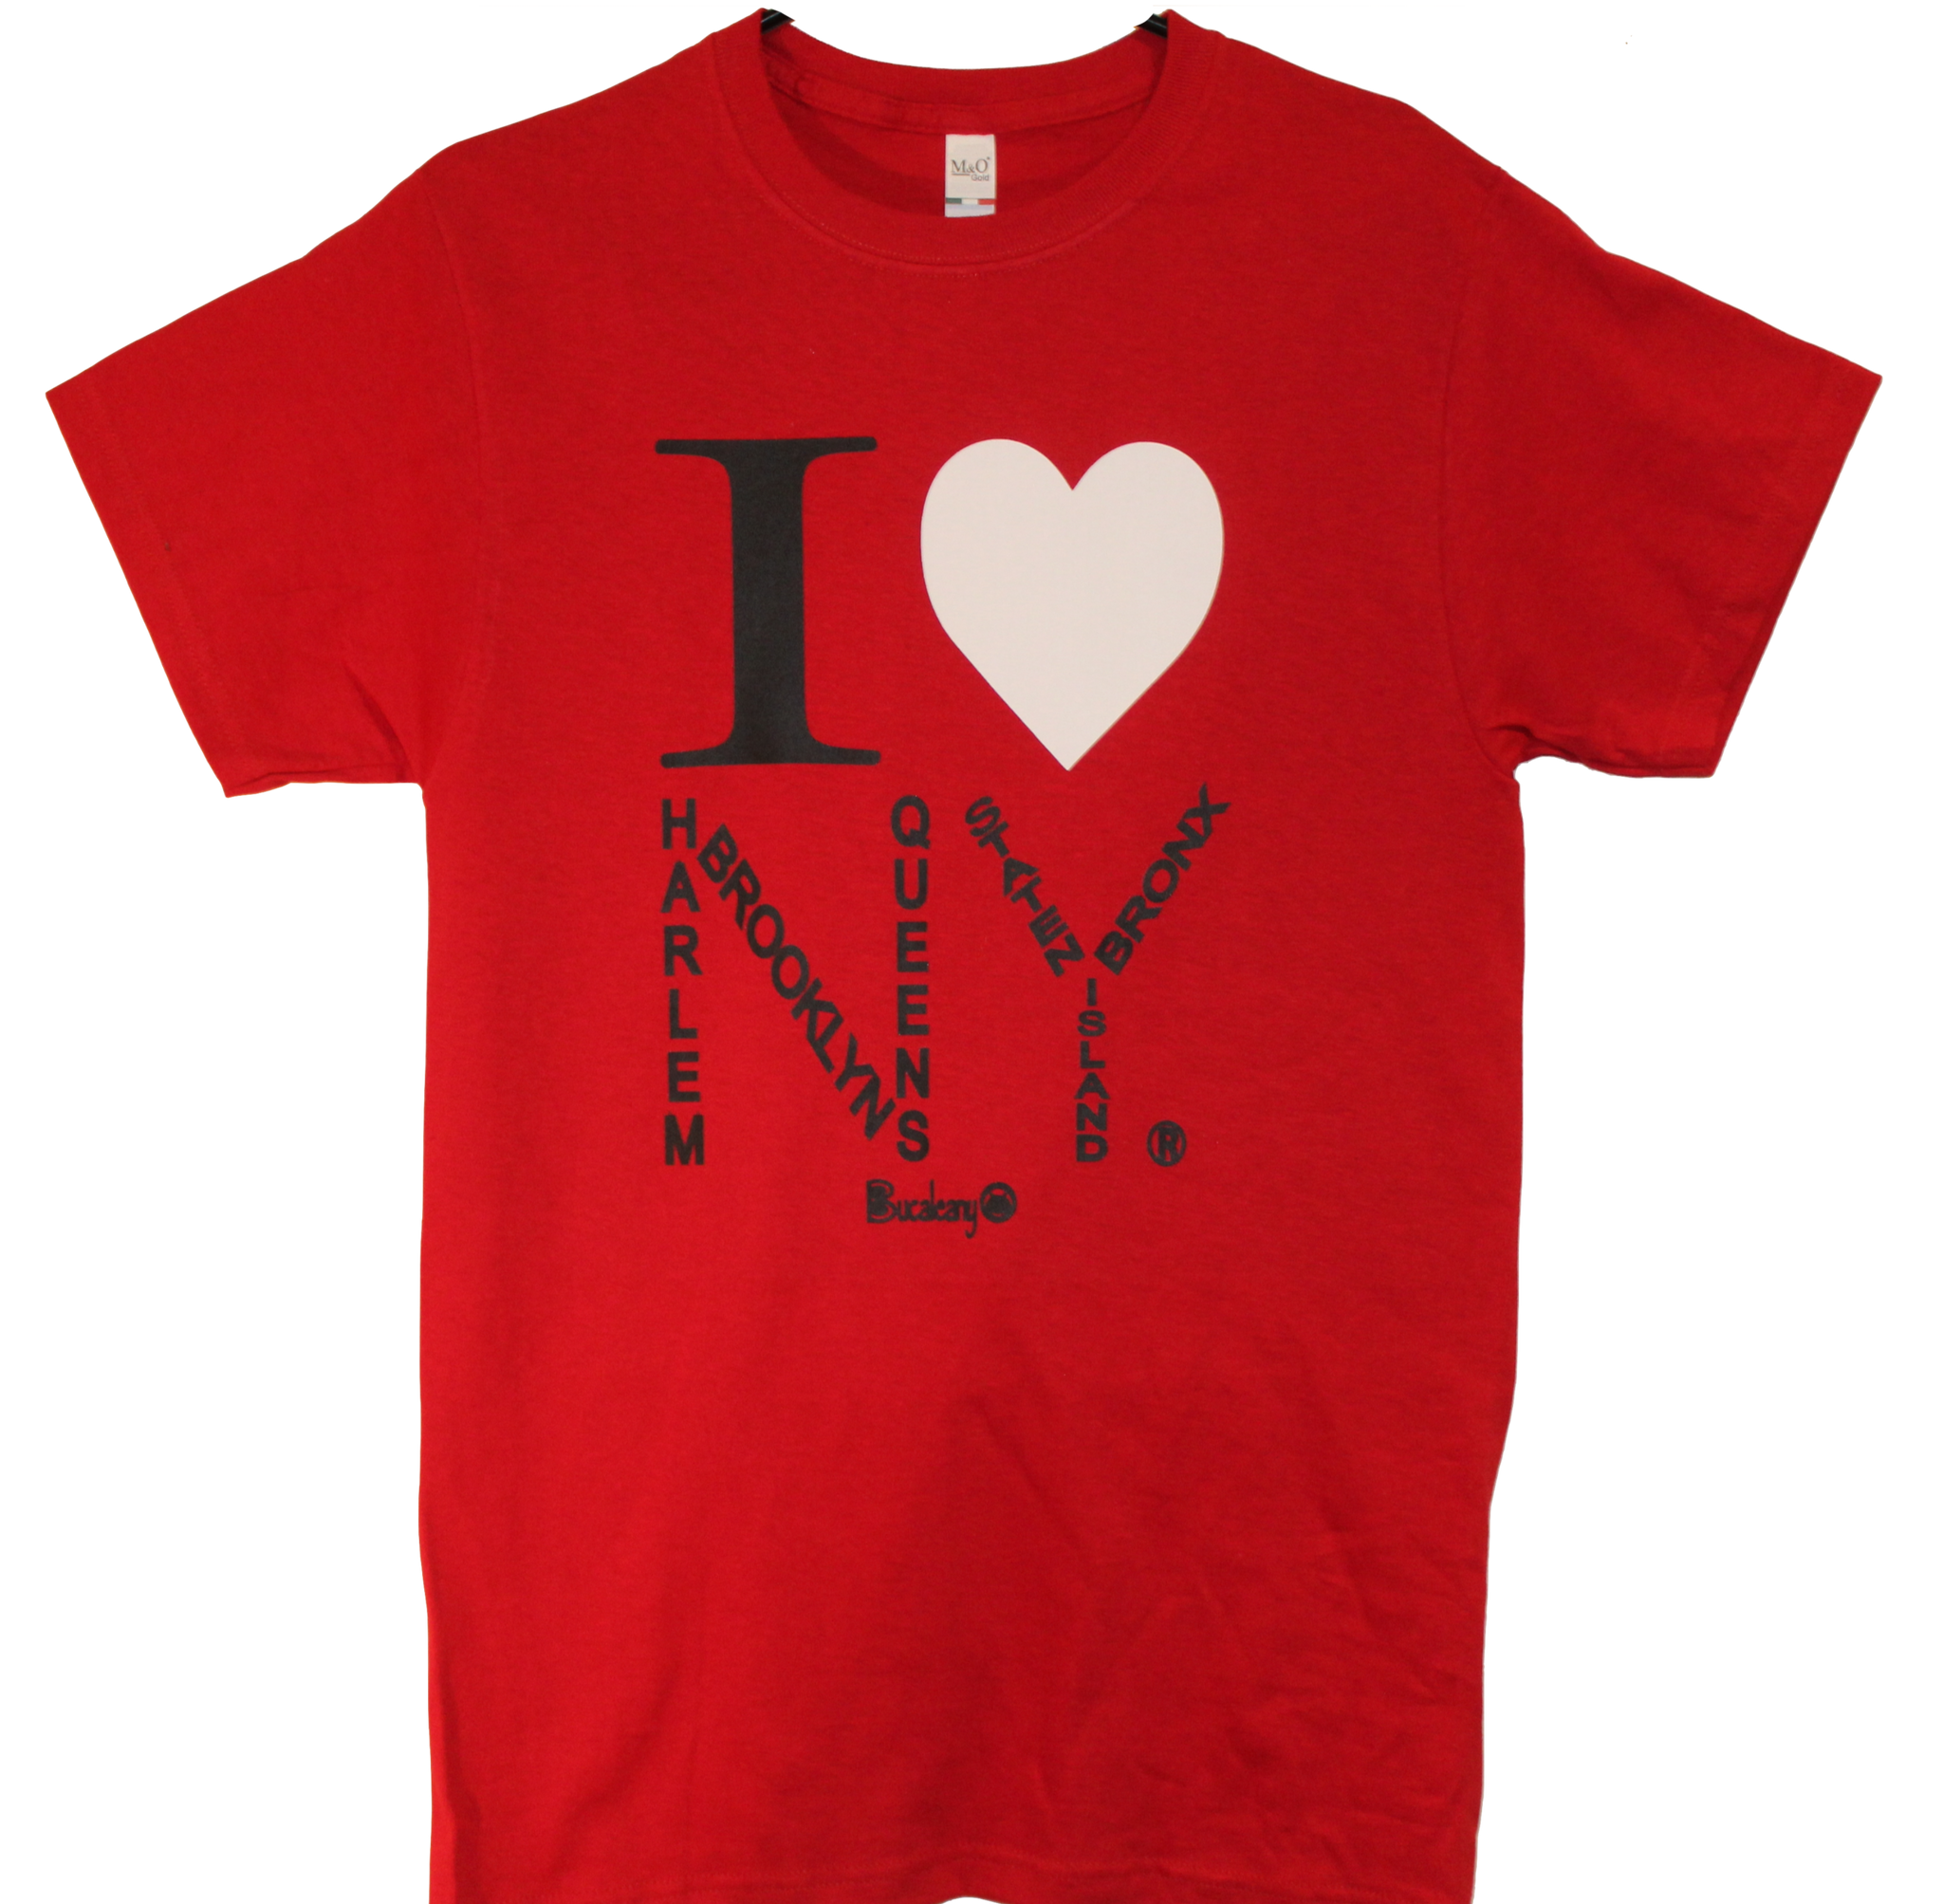 I love New york tshirt